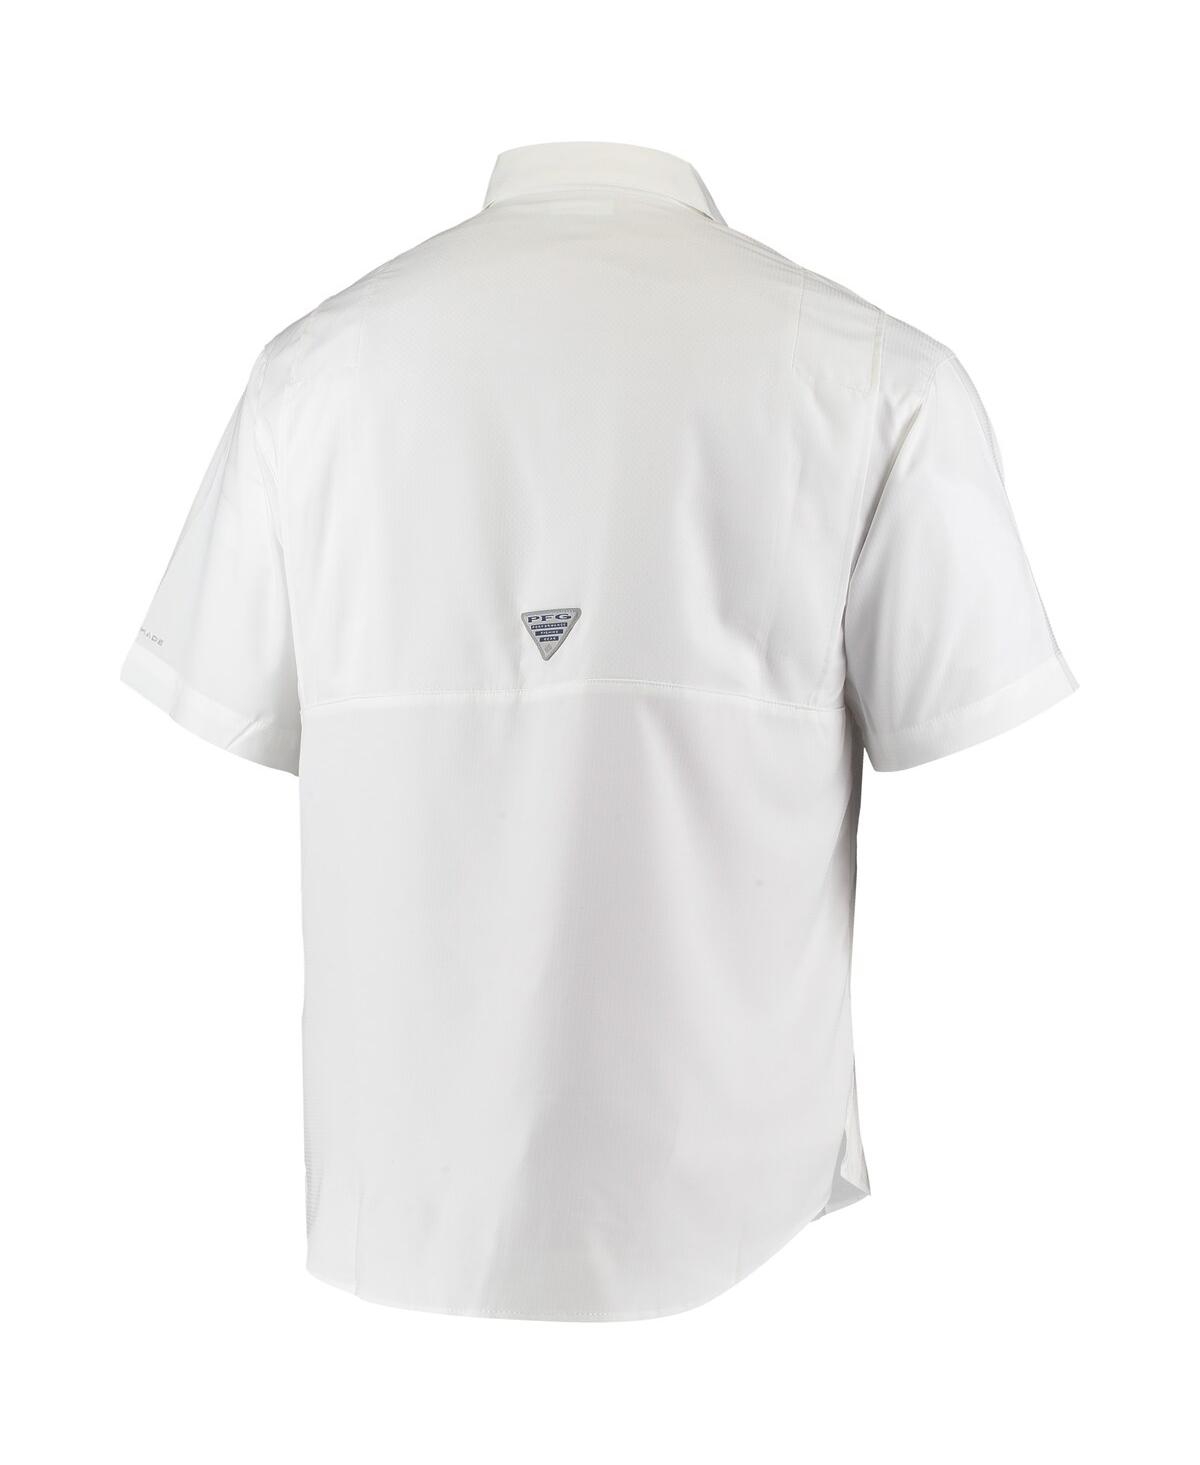 Shop Columbia Men's  Pfg White Florida Gators Tamiami Omni-shade Button-down Shirt